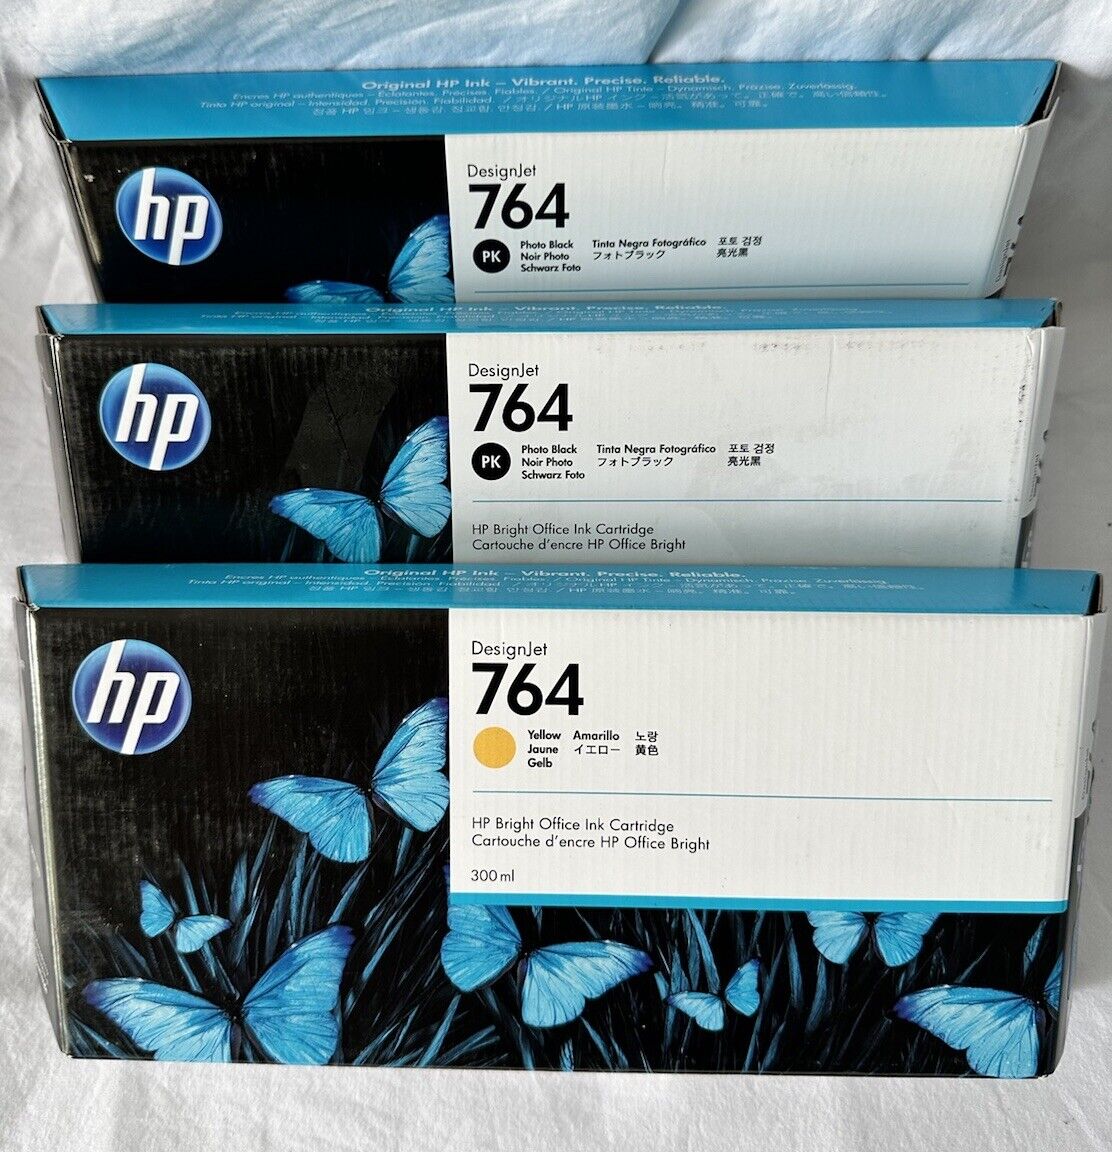 HP 764 300-ml Photo 5 pack 2 BLK 2 Yellow 1 Magenta (1 Yellow & 1 Magenta open)